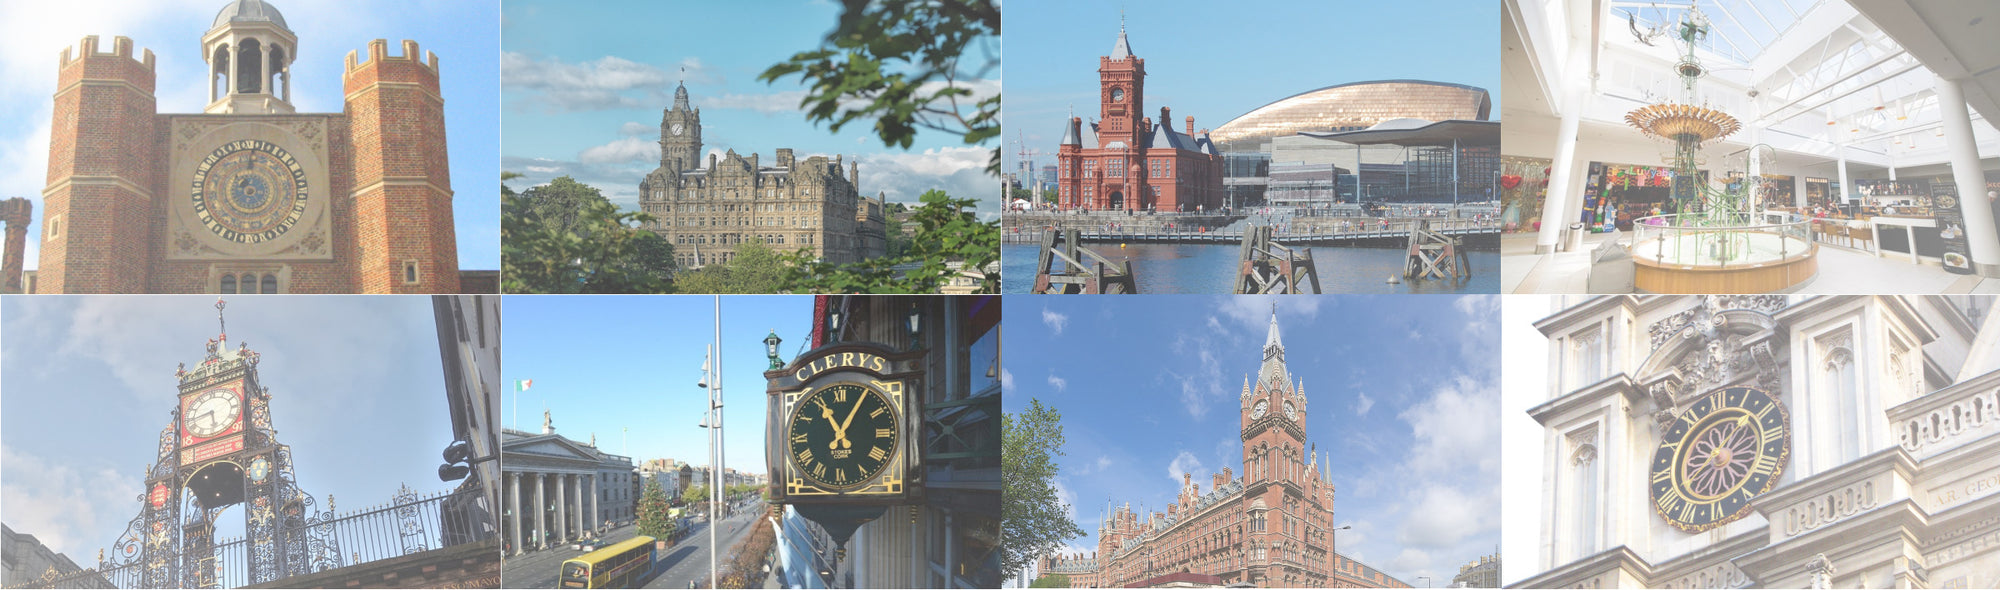 Famous UK Clocks